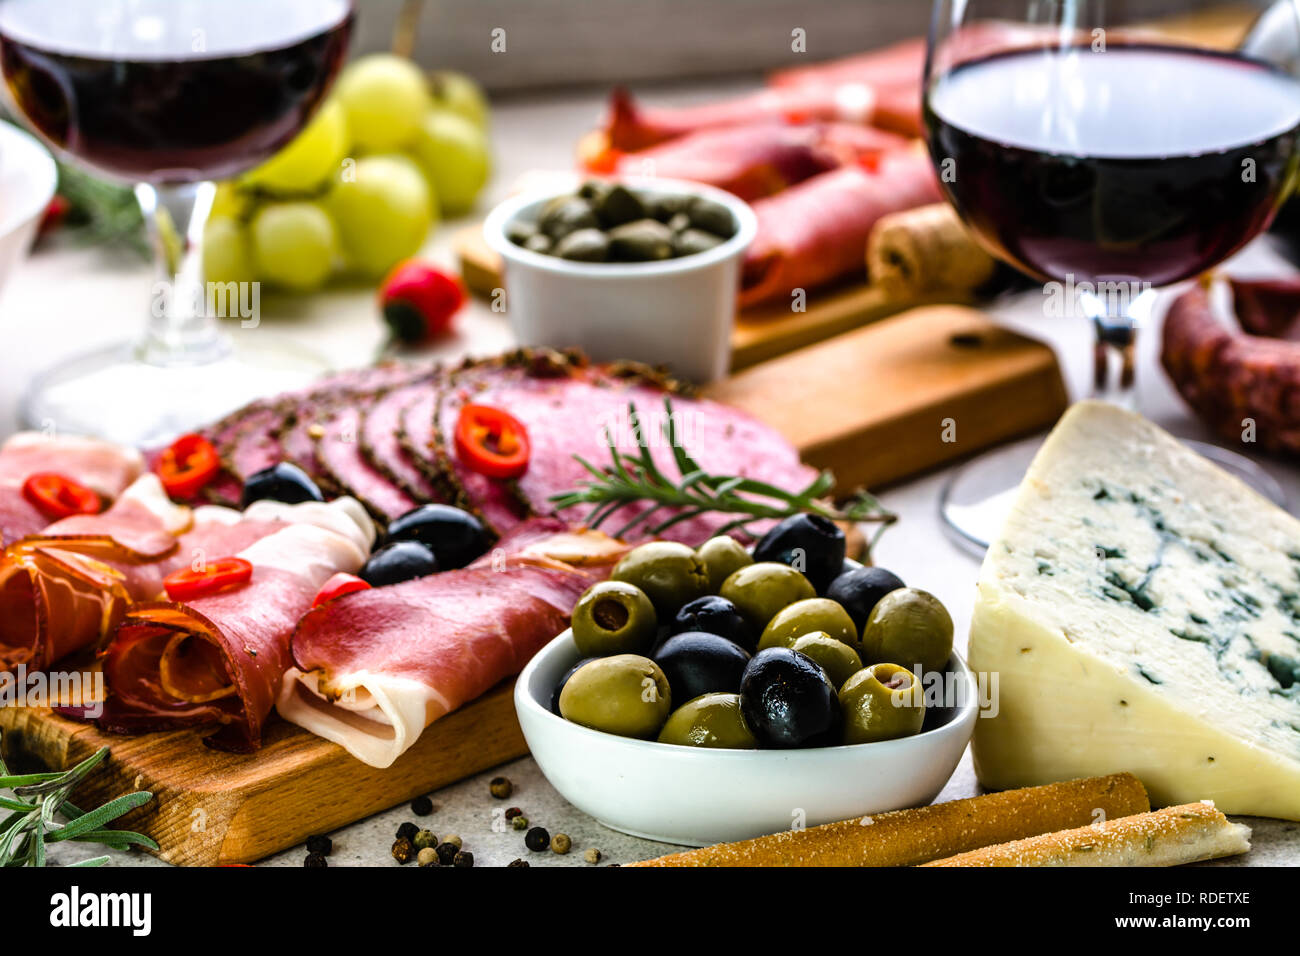 La varietà del cibo su tavola, vino set snack, olive, formaggi e altri aperitivi, antipasti italiani sulla piastra Foto Stock